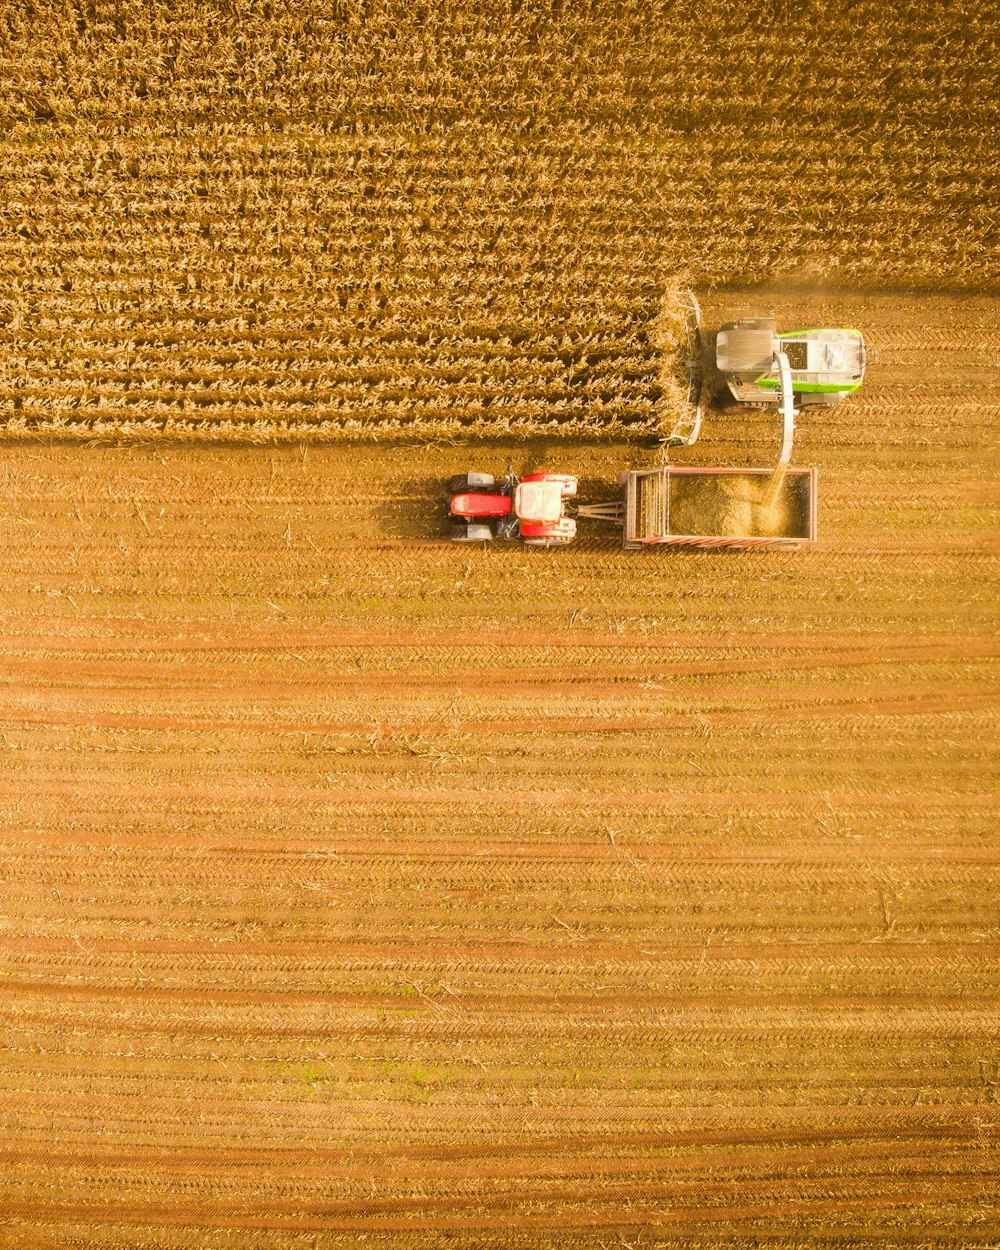 juguete de tractor agrícola en el suelo